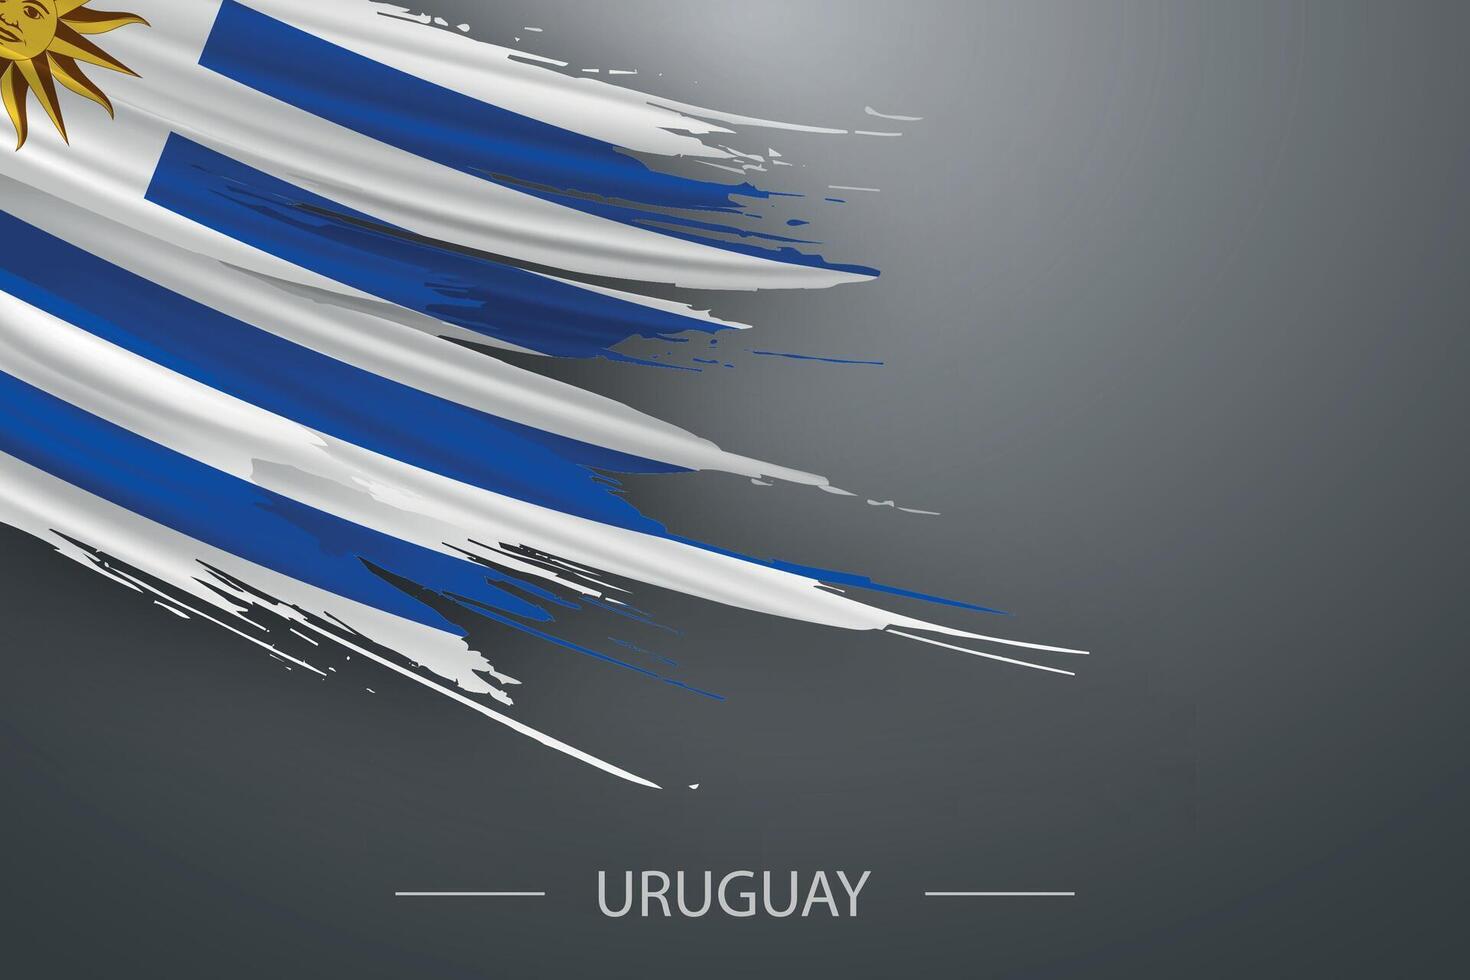 3d grunge brush stroke flag of Uruguay vector